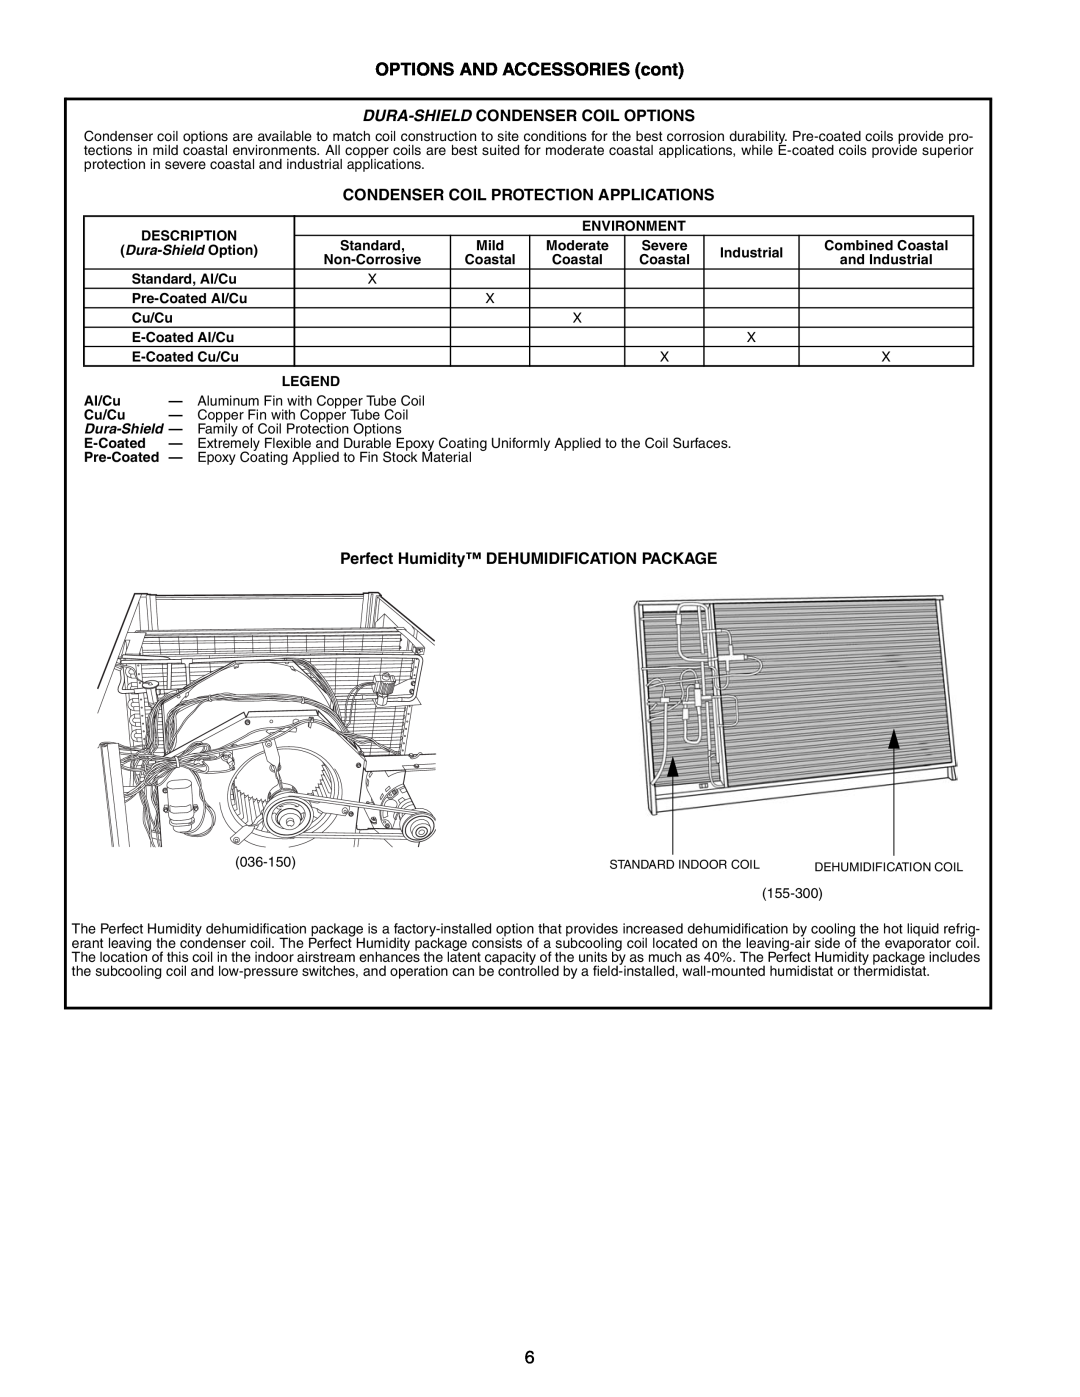 Bryant 558F, 551B Dura-Shield Condenser Coil Options, Condenser Coil Protection Applications, OPTIONS AND ACCESSORIES cont 